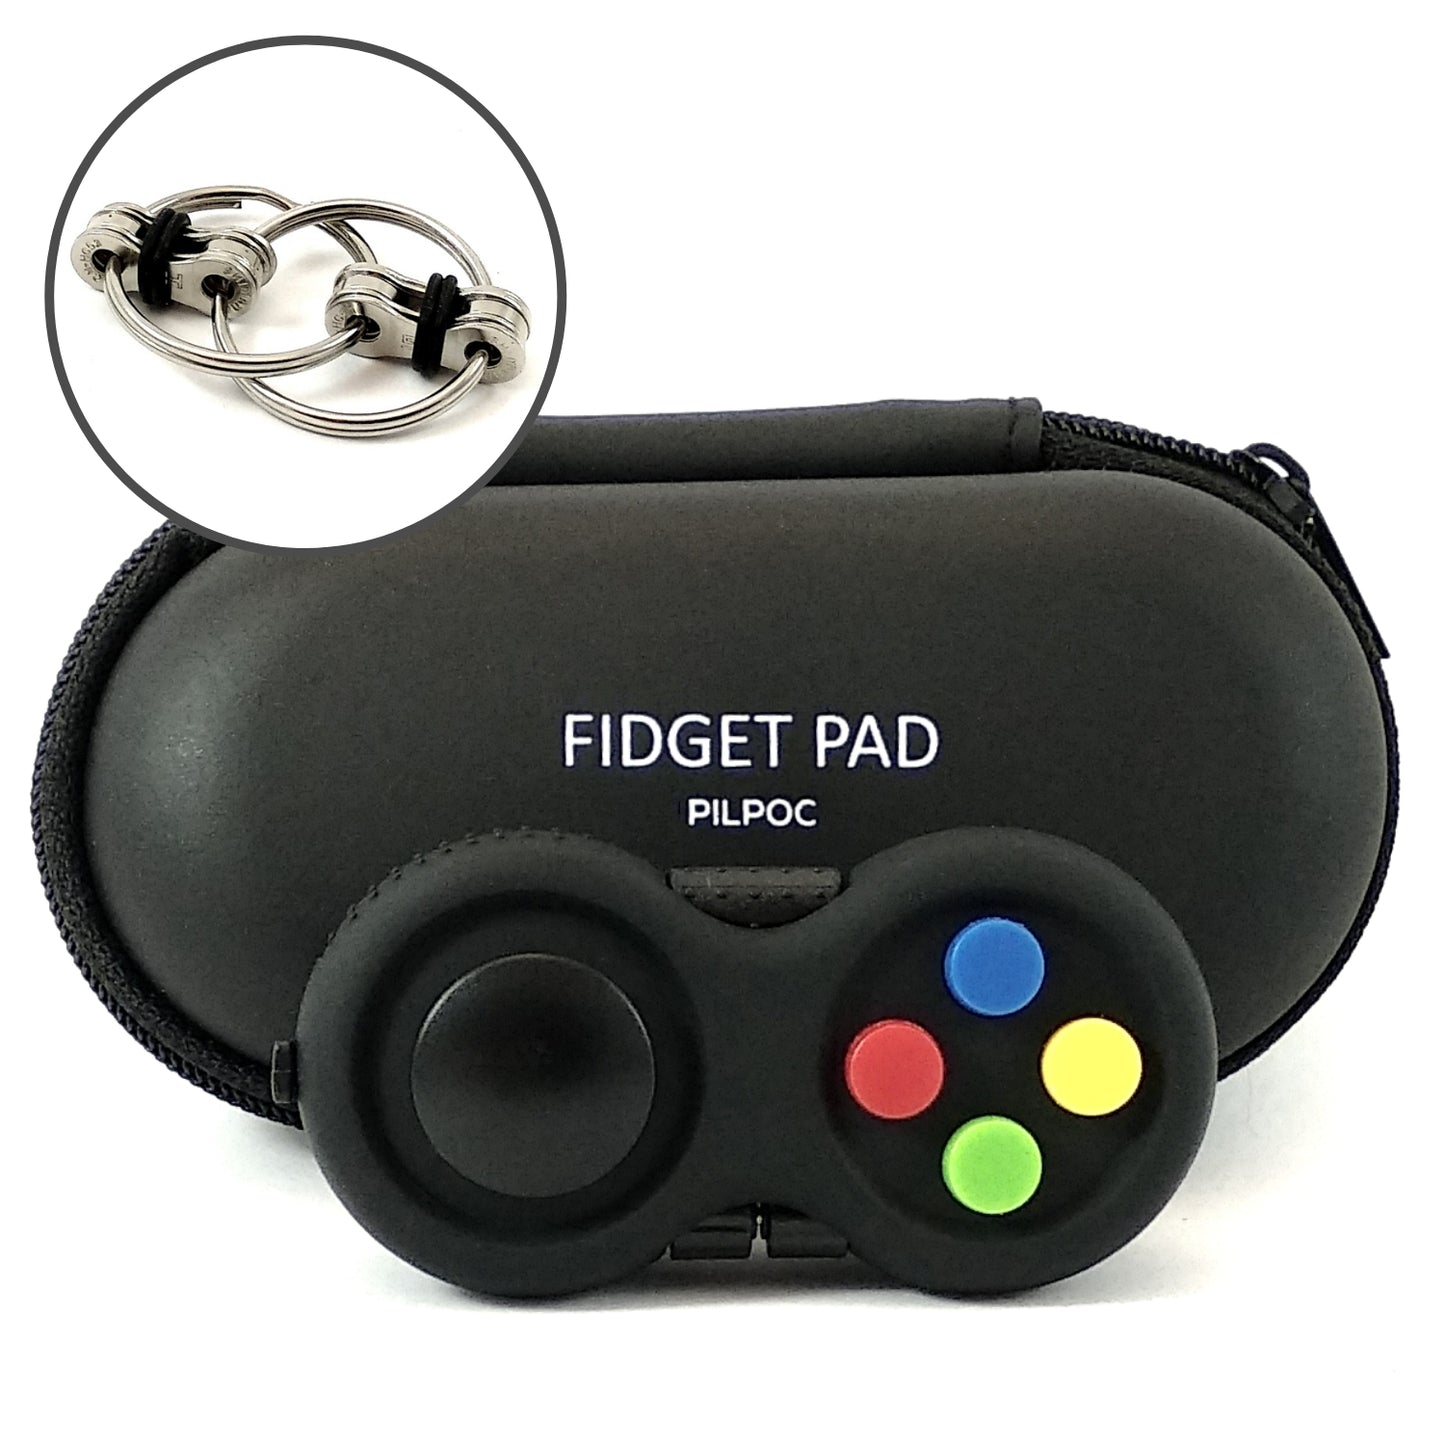 Fidget controller pad